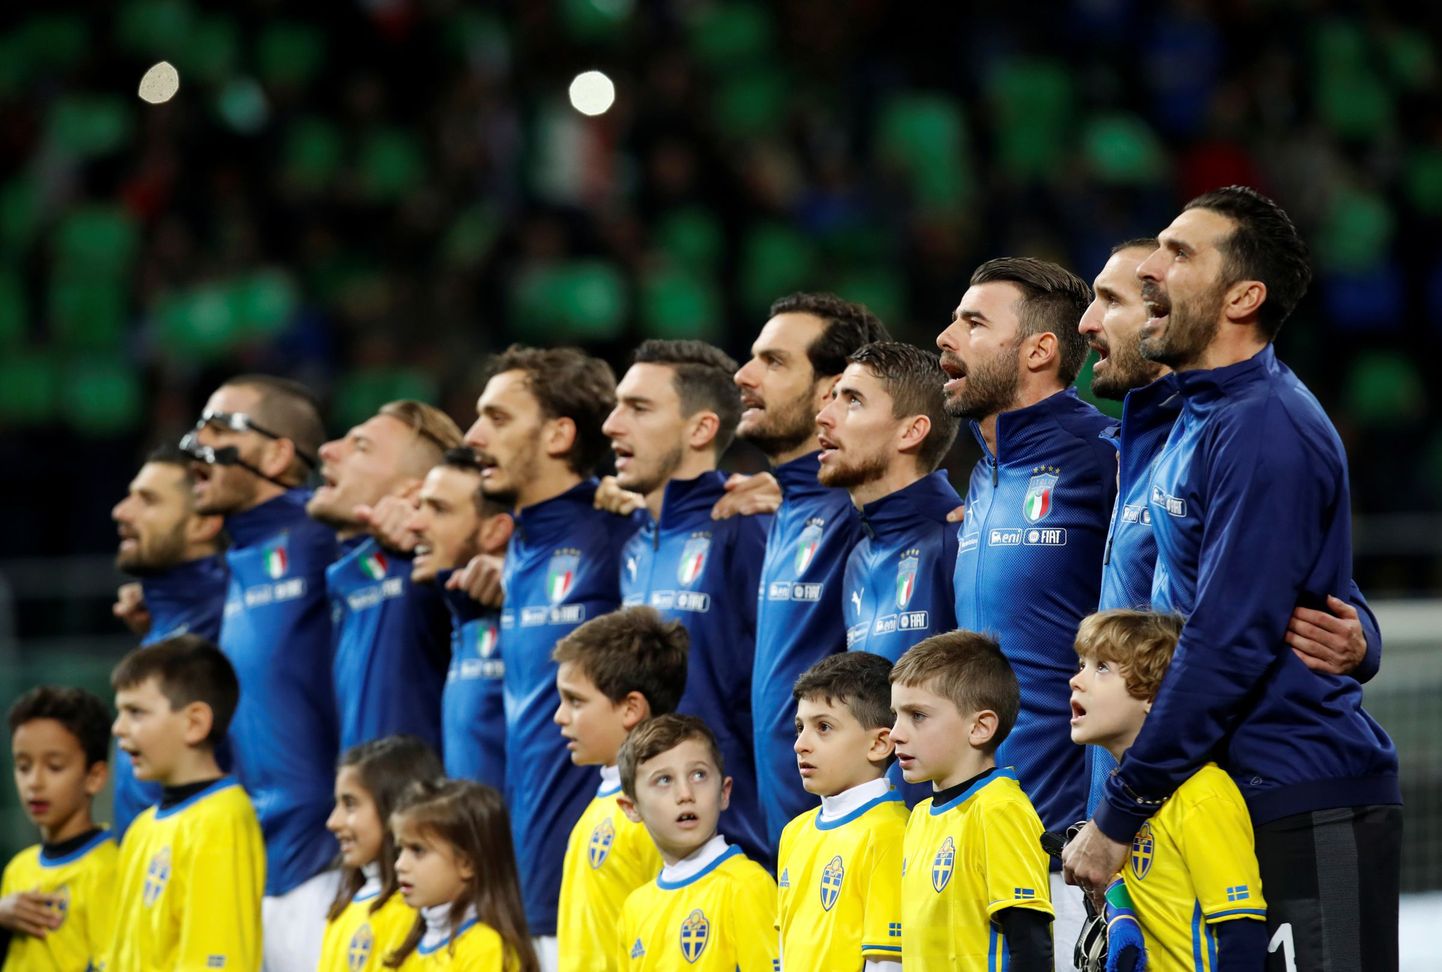 Itaalia jalgpallikoondis laulmas rahvushümni enne MM-i play-off mängu Rootsi vastu.